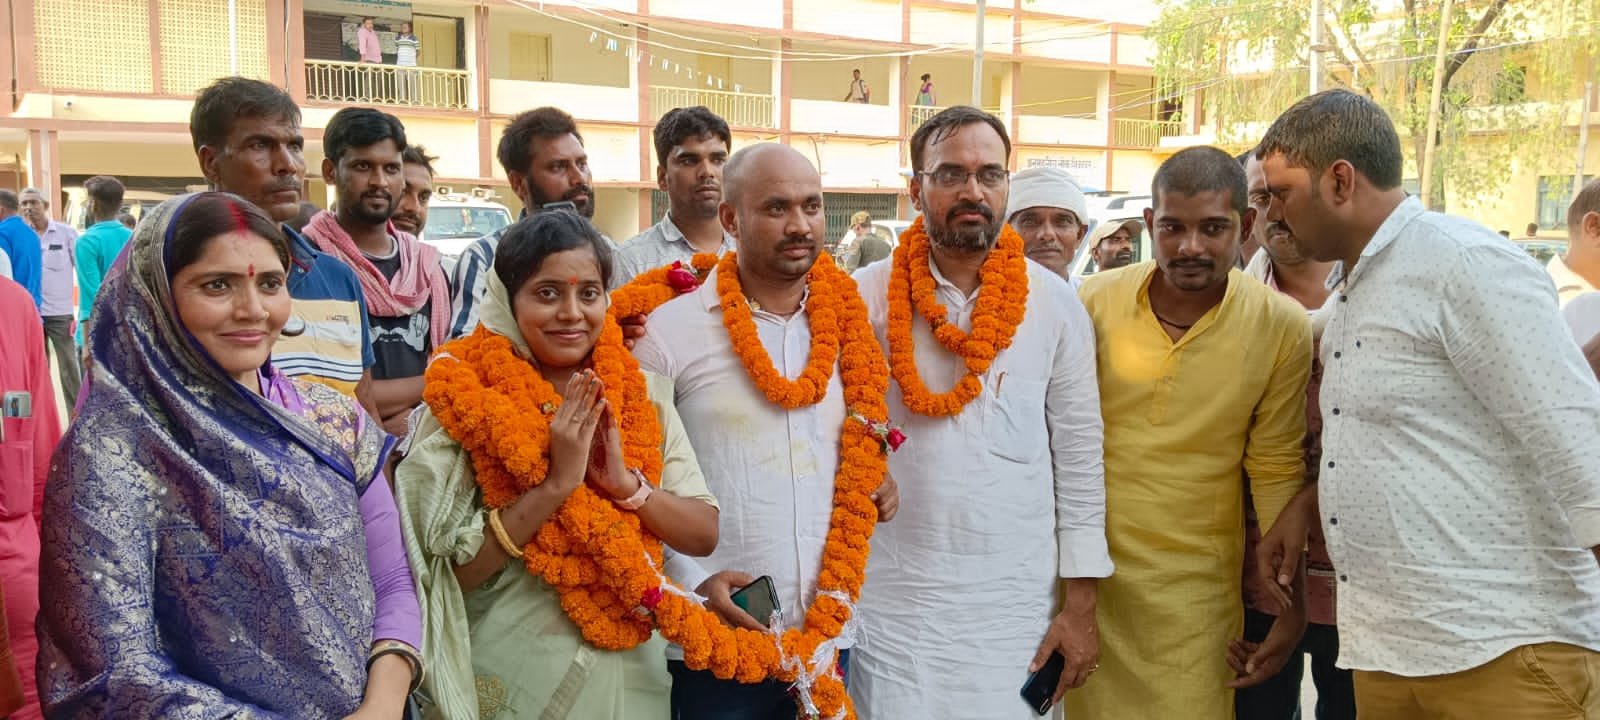 नप सभापति प्रत्याशी अर्चना कुमारी चुनौतीपूर्ण चुनाव में नगरवासियों की विश्वास बटोरने का ले चुकी है संकल्प : मनीष सिंह